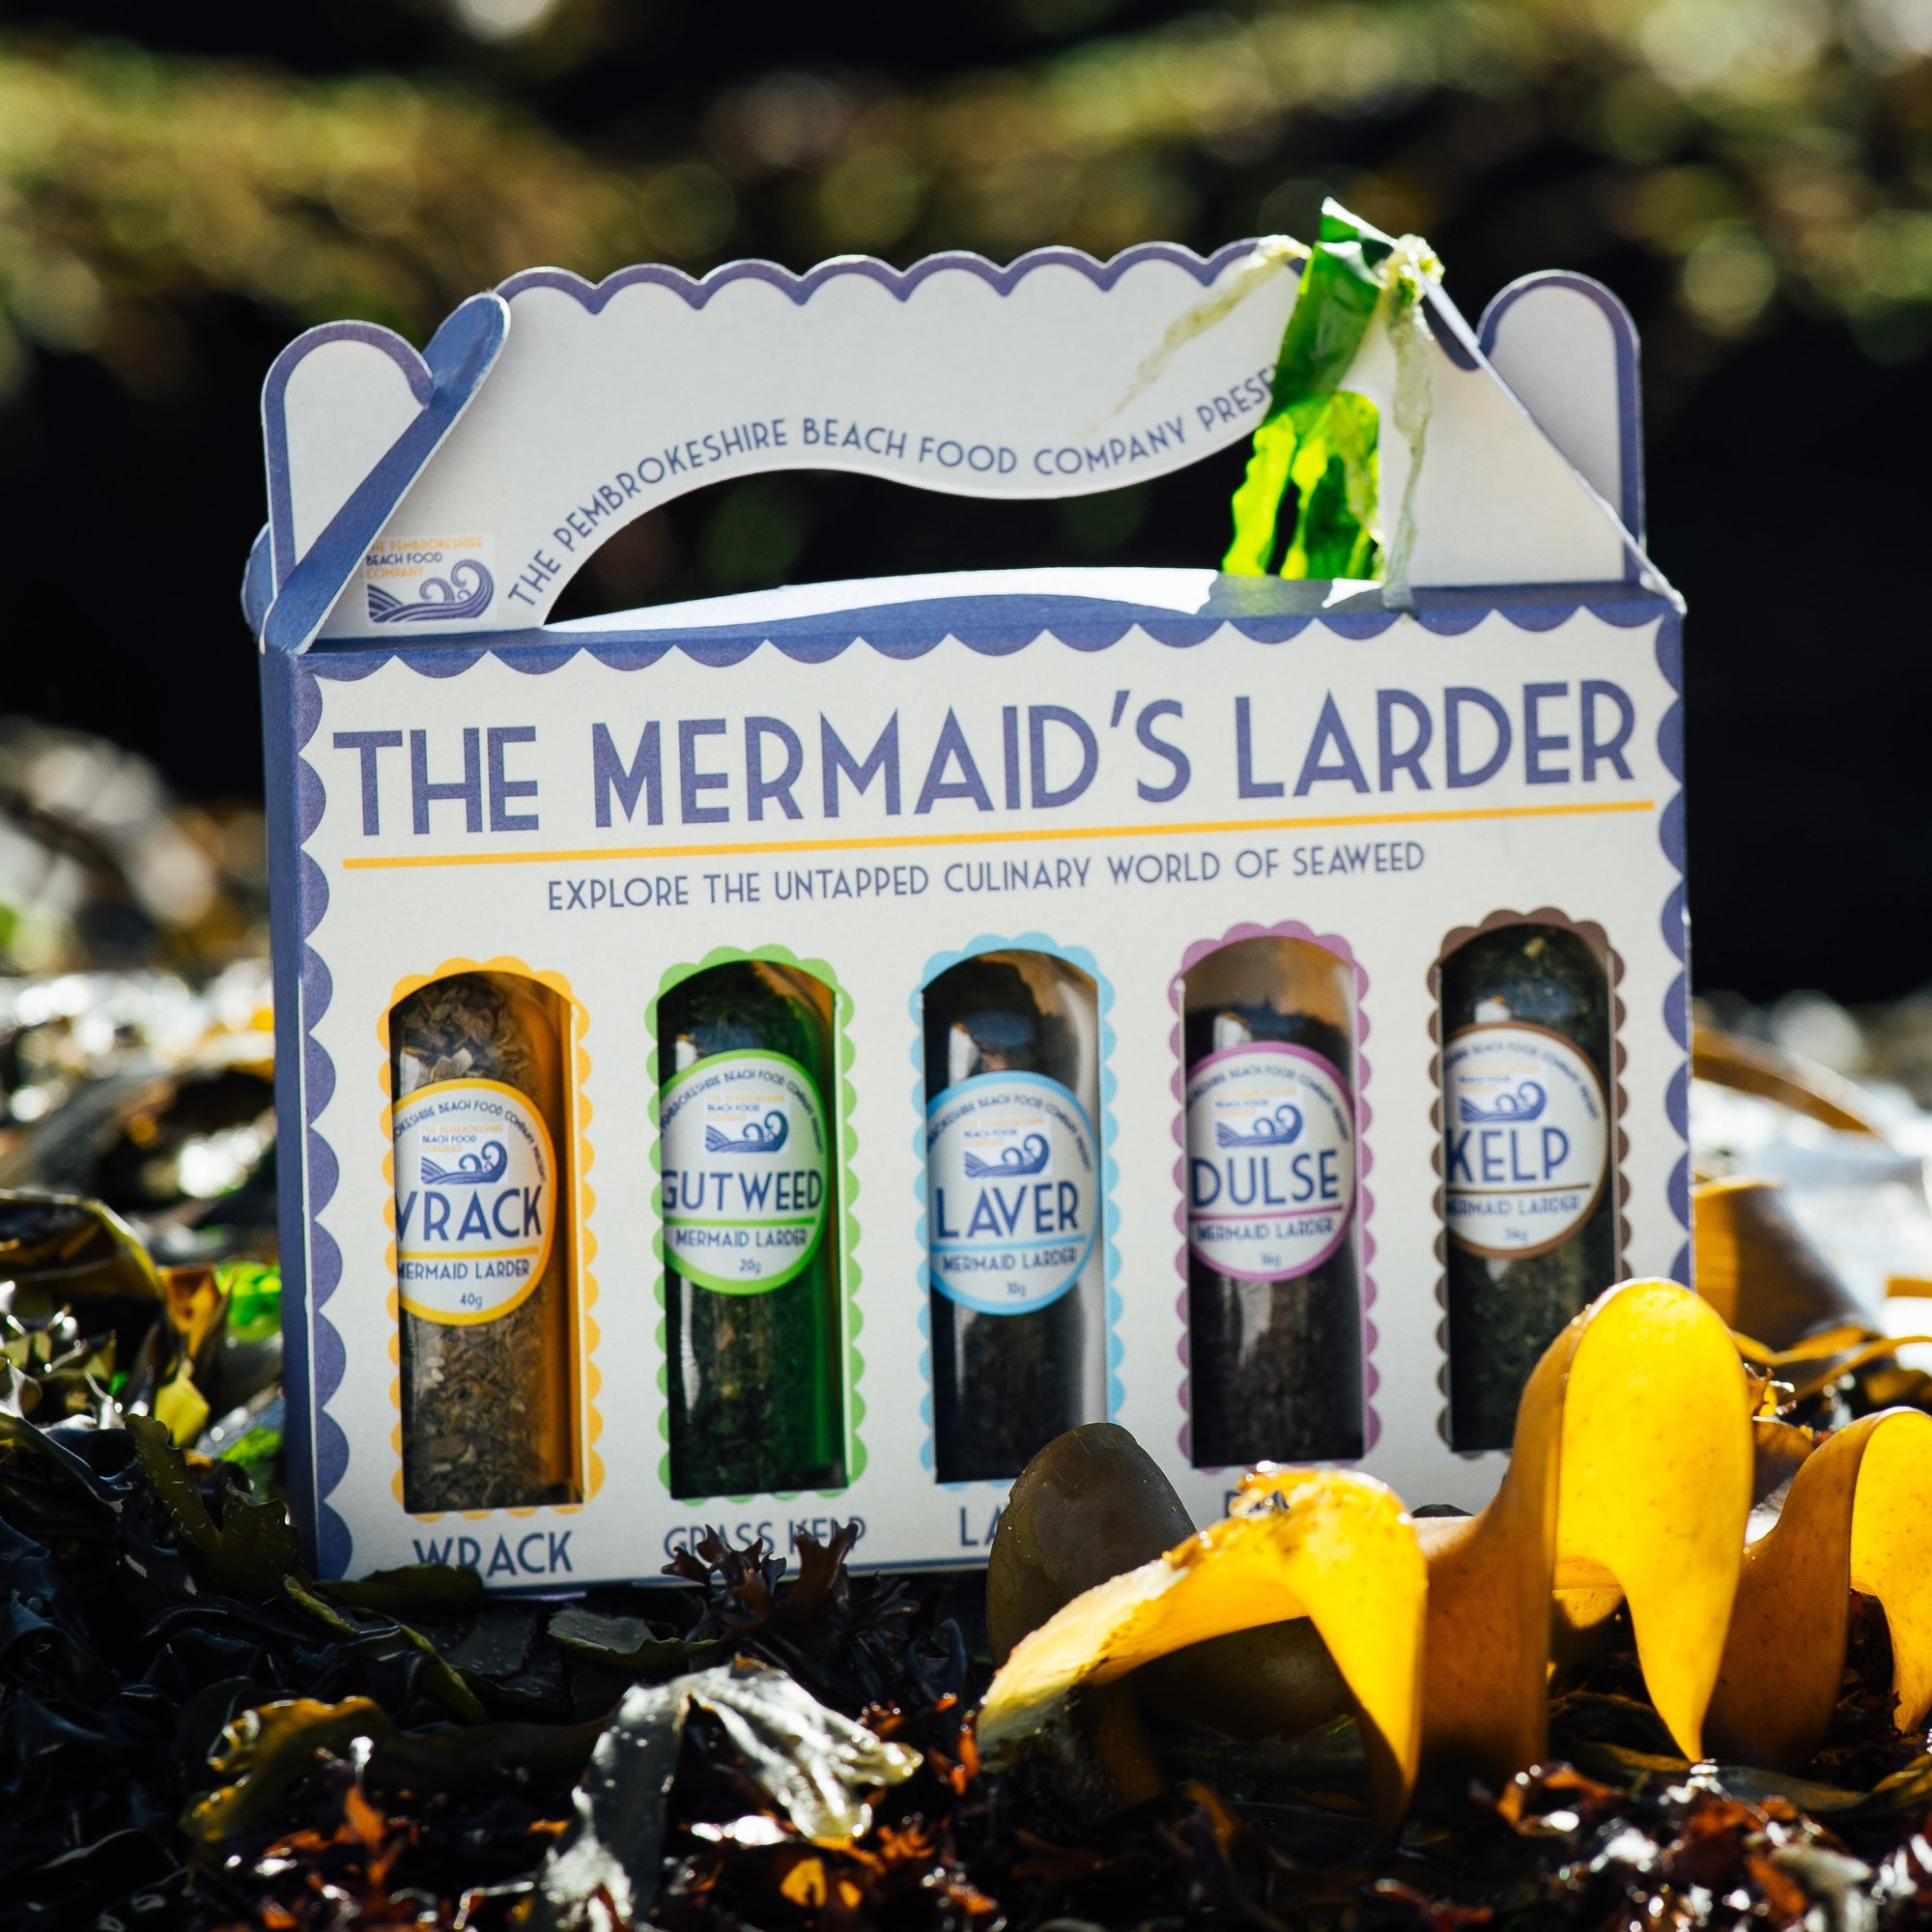 Seaweed Seasonings Condiments Collection (The Mermaid's Larder)